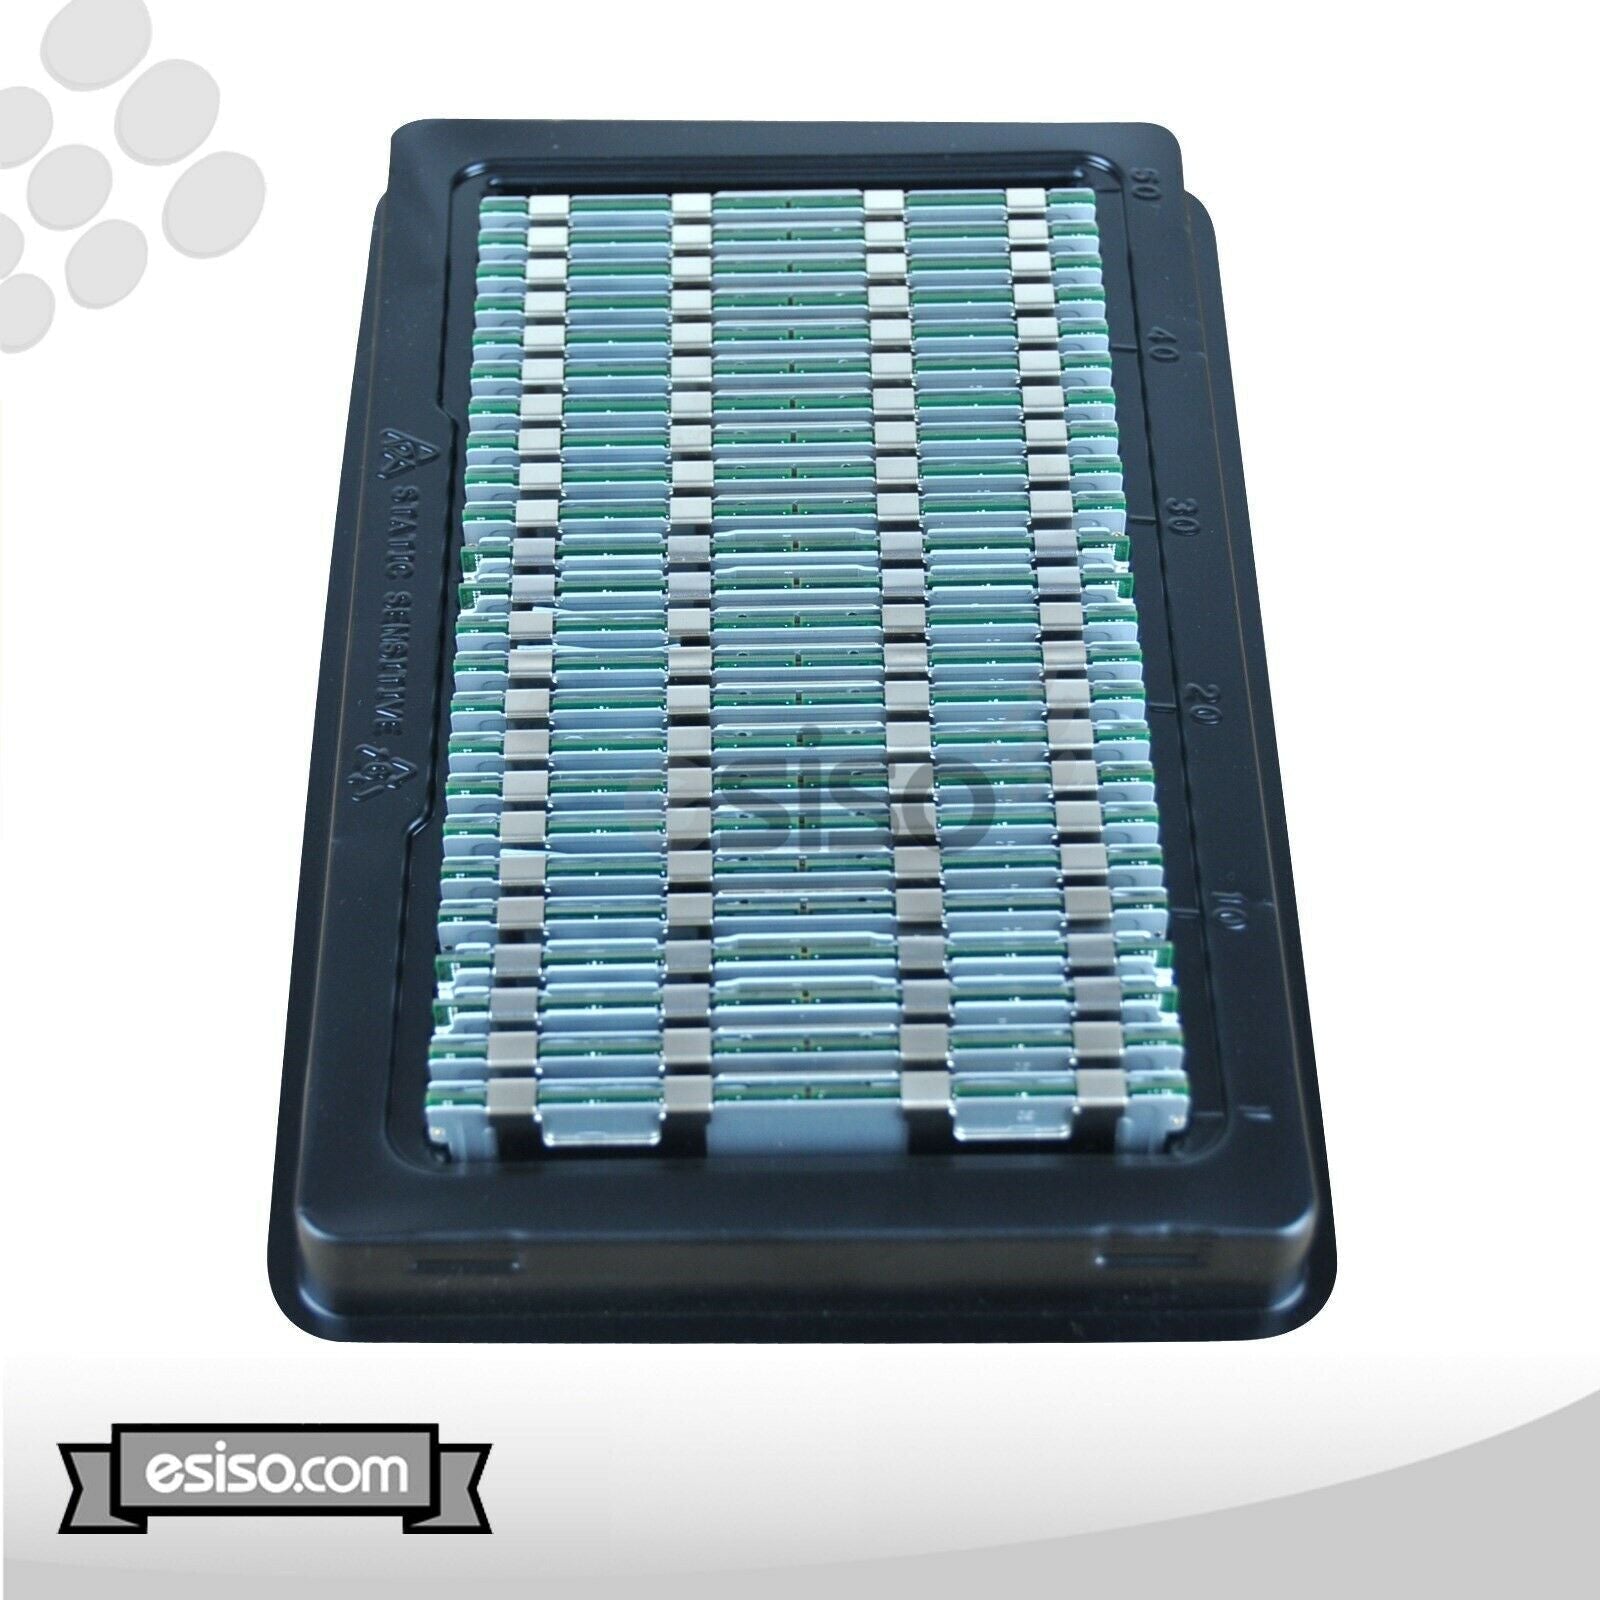 16GB (1x 16GB) 10600R RAM MEMORY MODULE FOR HP DL320 DL370 ML330 G6